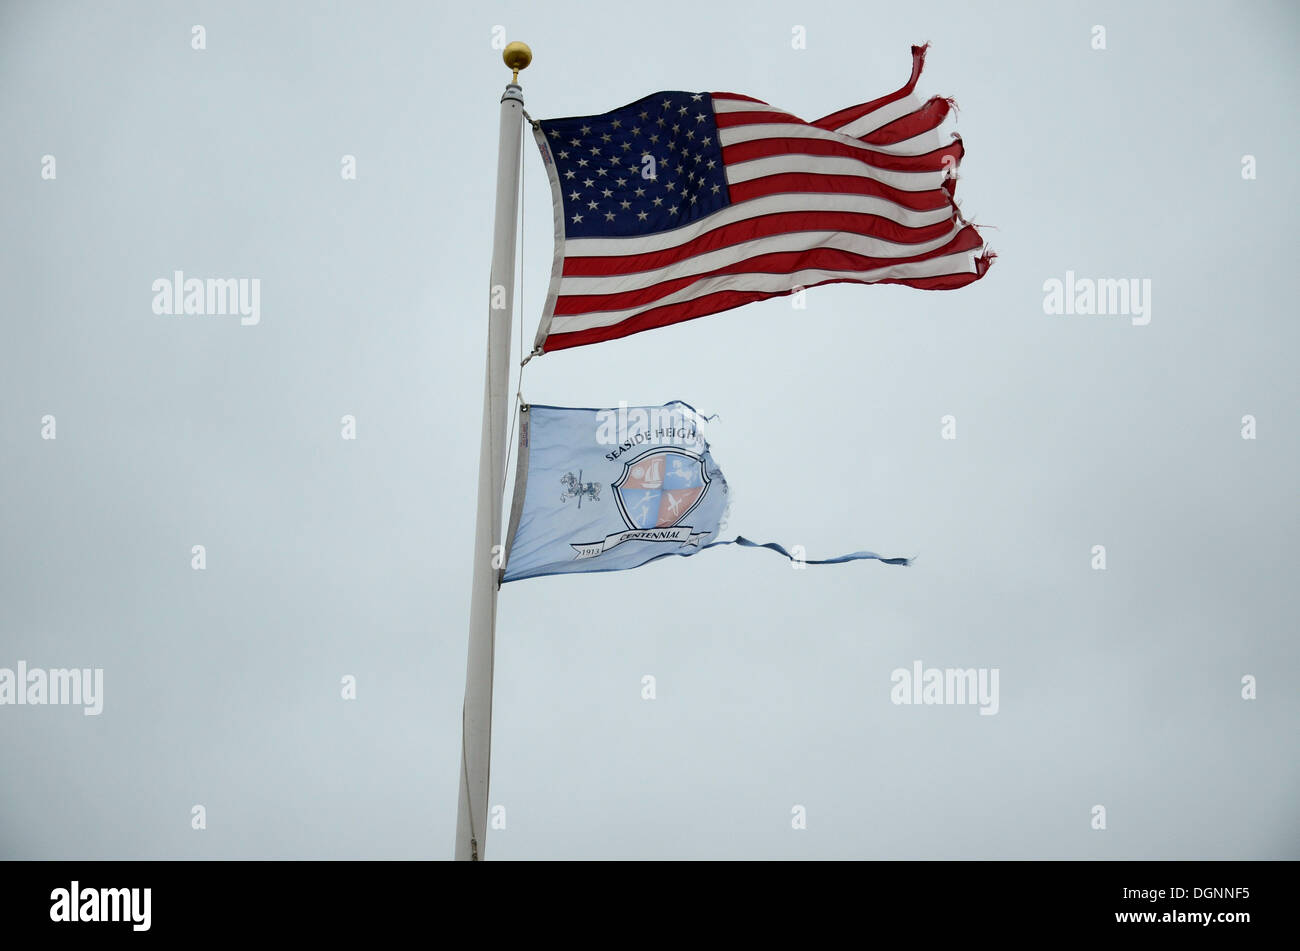 Seaside Heights, New Jersey, USA. 20 Oct, 2013. Le drapeau américain et le drapeau municipal voler sur le quai qui a été partiellement détruit par l'ouragan 'Sandy' à Seaside Heights, New Jersey, USA, 20 octobre 2013. Il y a un an, l'ouragan 'Sandy' à travers les Caraïbes et le long de la côte est des Etats-Unis. Plus de 140 personnes ont été tuées dans la tempête qui a causé des dommages coûtant des milliards. Beaucoup a été reconstruit, mais l'ouragan a laissé sa marque dans le peuple. Photo : EMOKE BEBIAK/dpa/Alamy Live News Banque D'Images